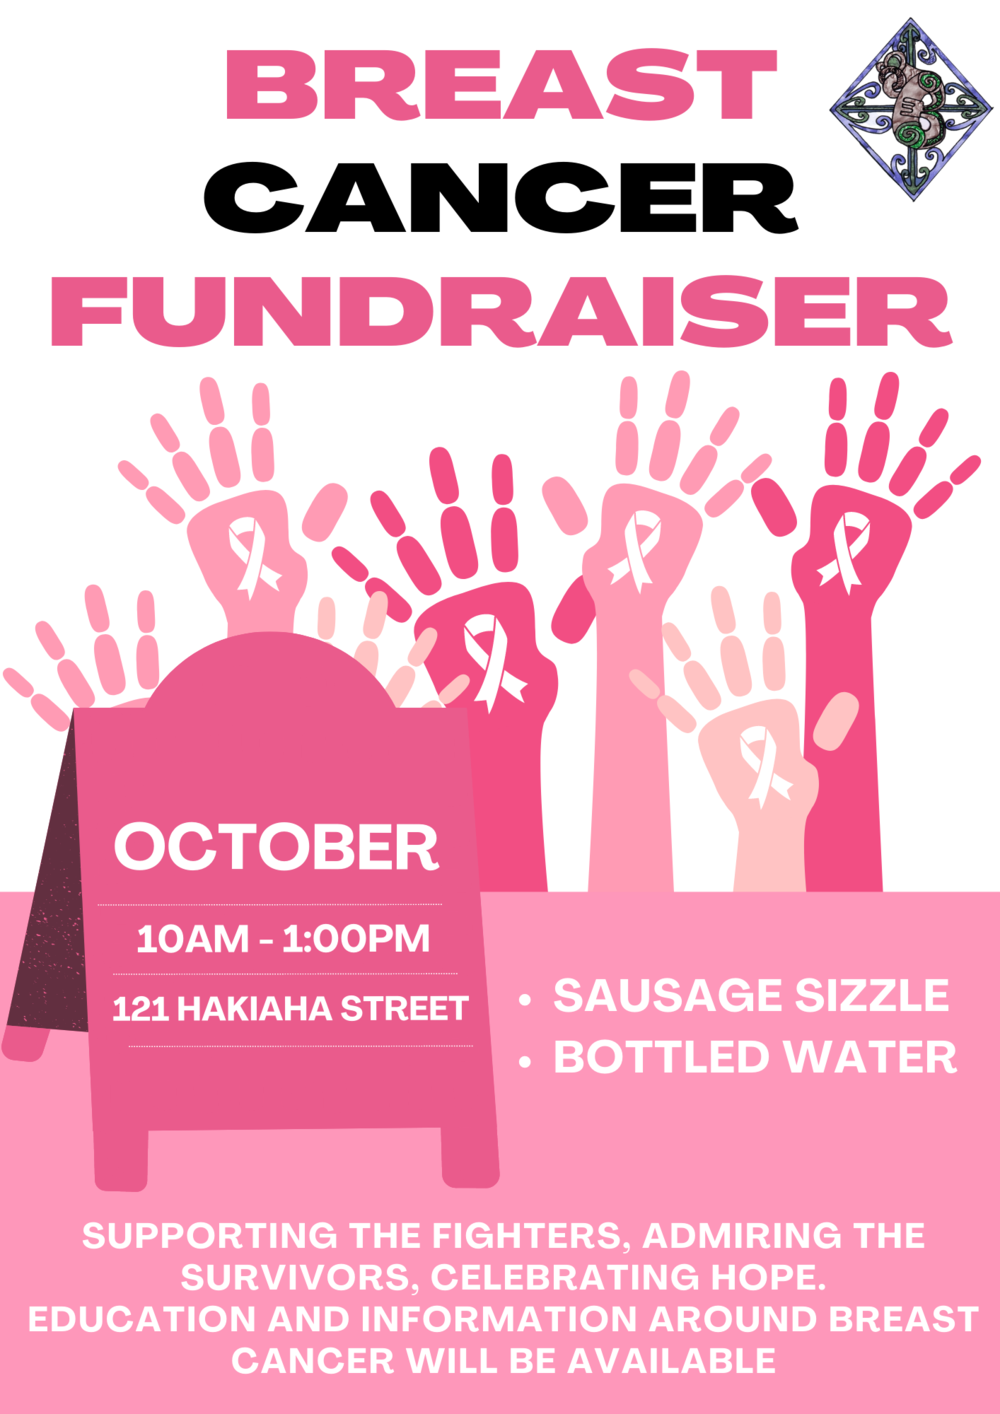 Taumarunui Community Kokiri Trust Sausage Sizzle Fundraiser